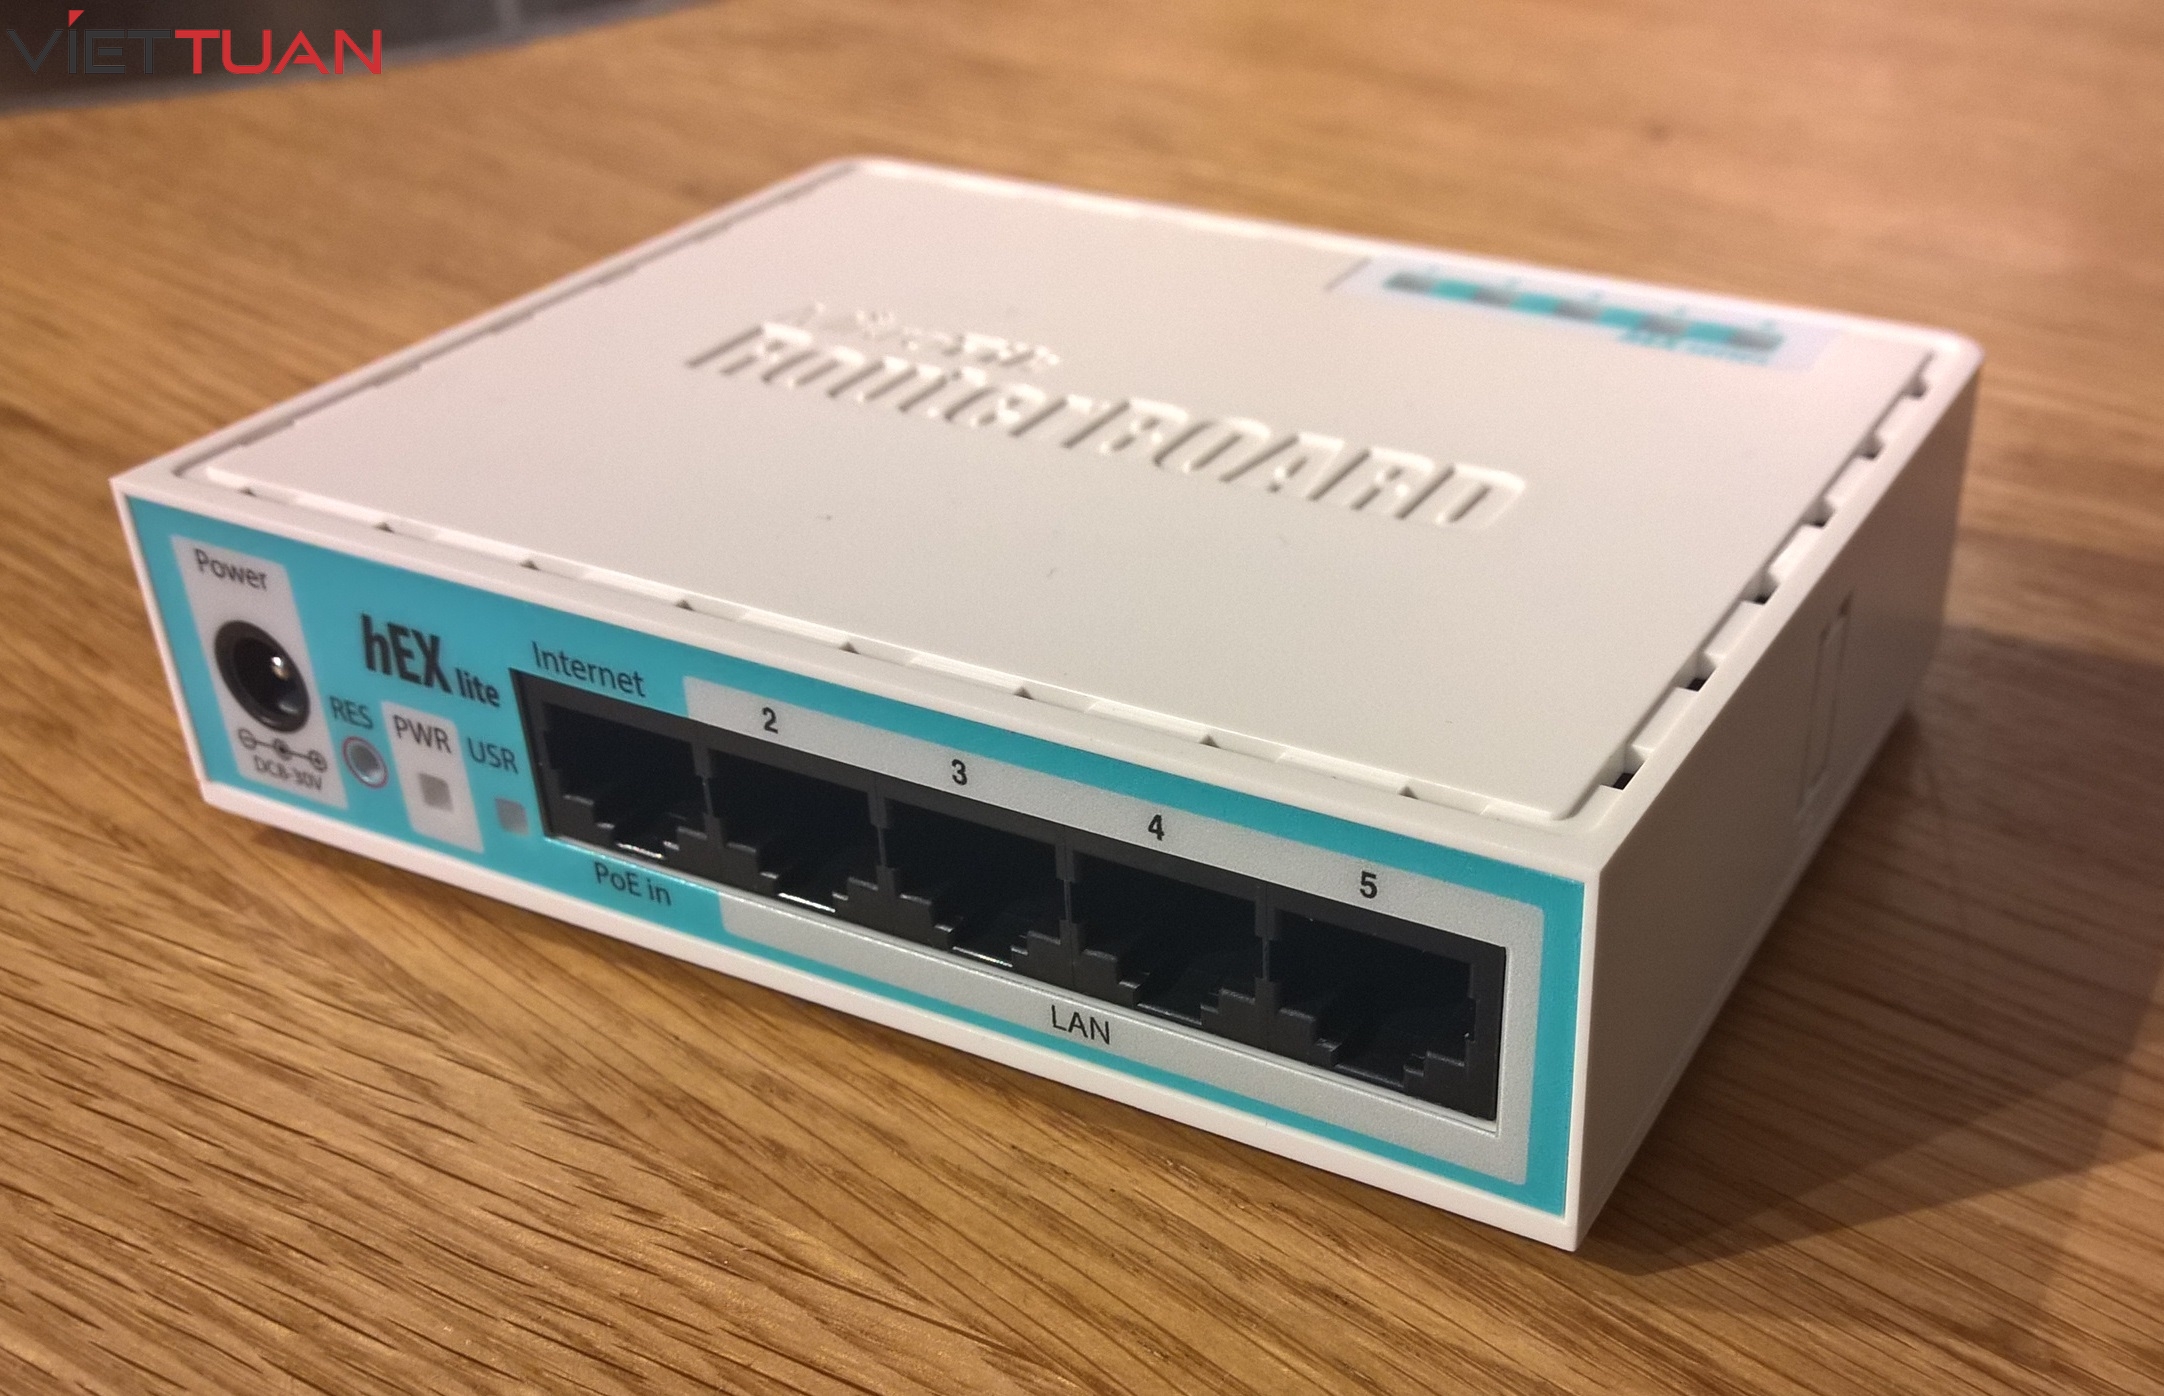 Sản phẩm MikroTik hEX RB750Gr3 là một router được thiết kế và sản xuất bởi công ty MikroTik